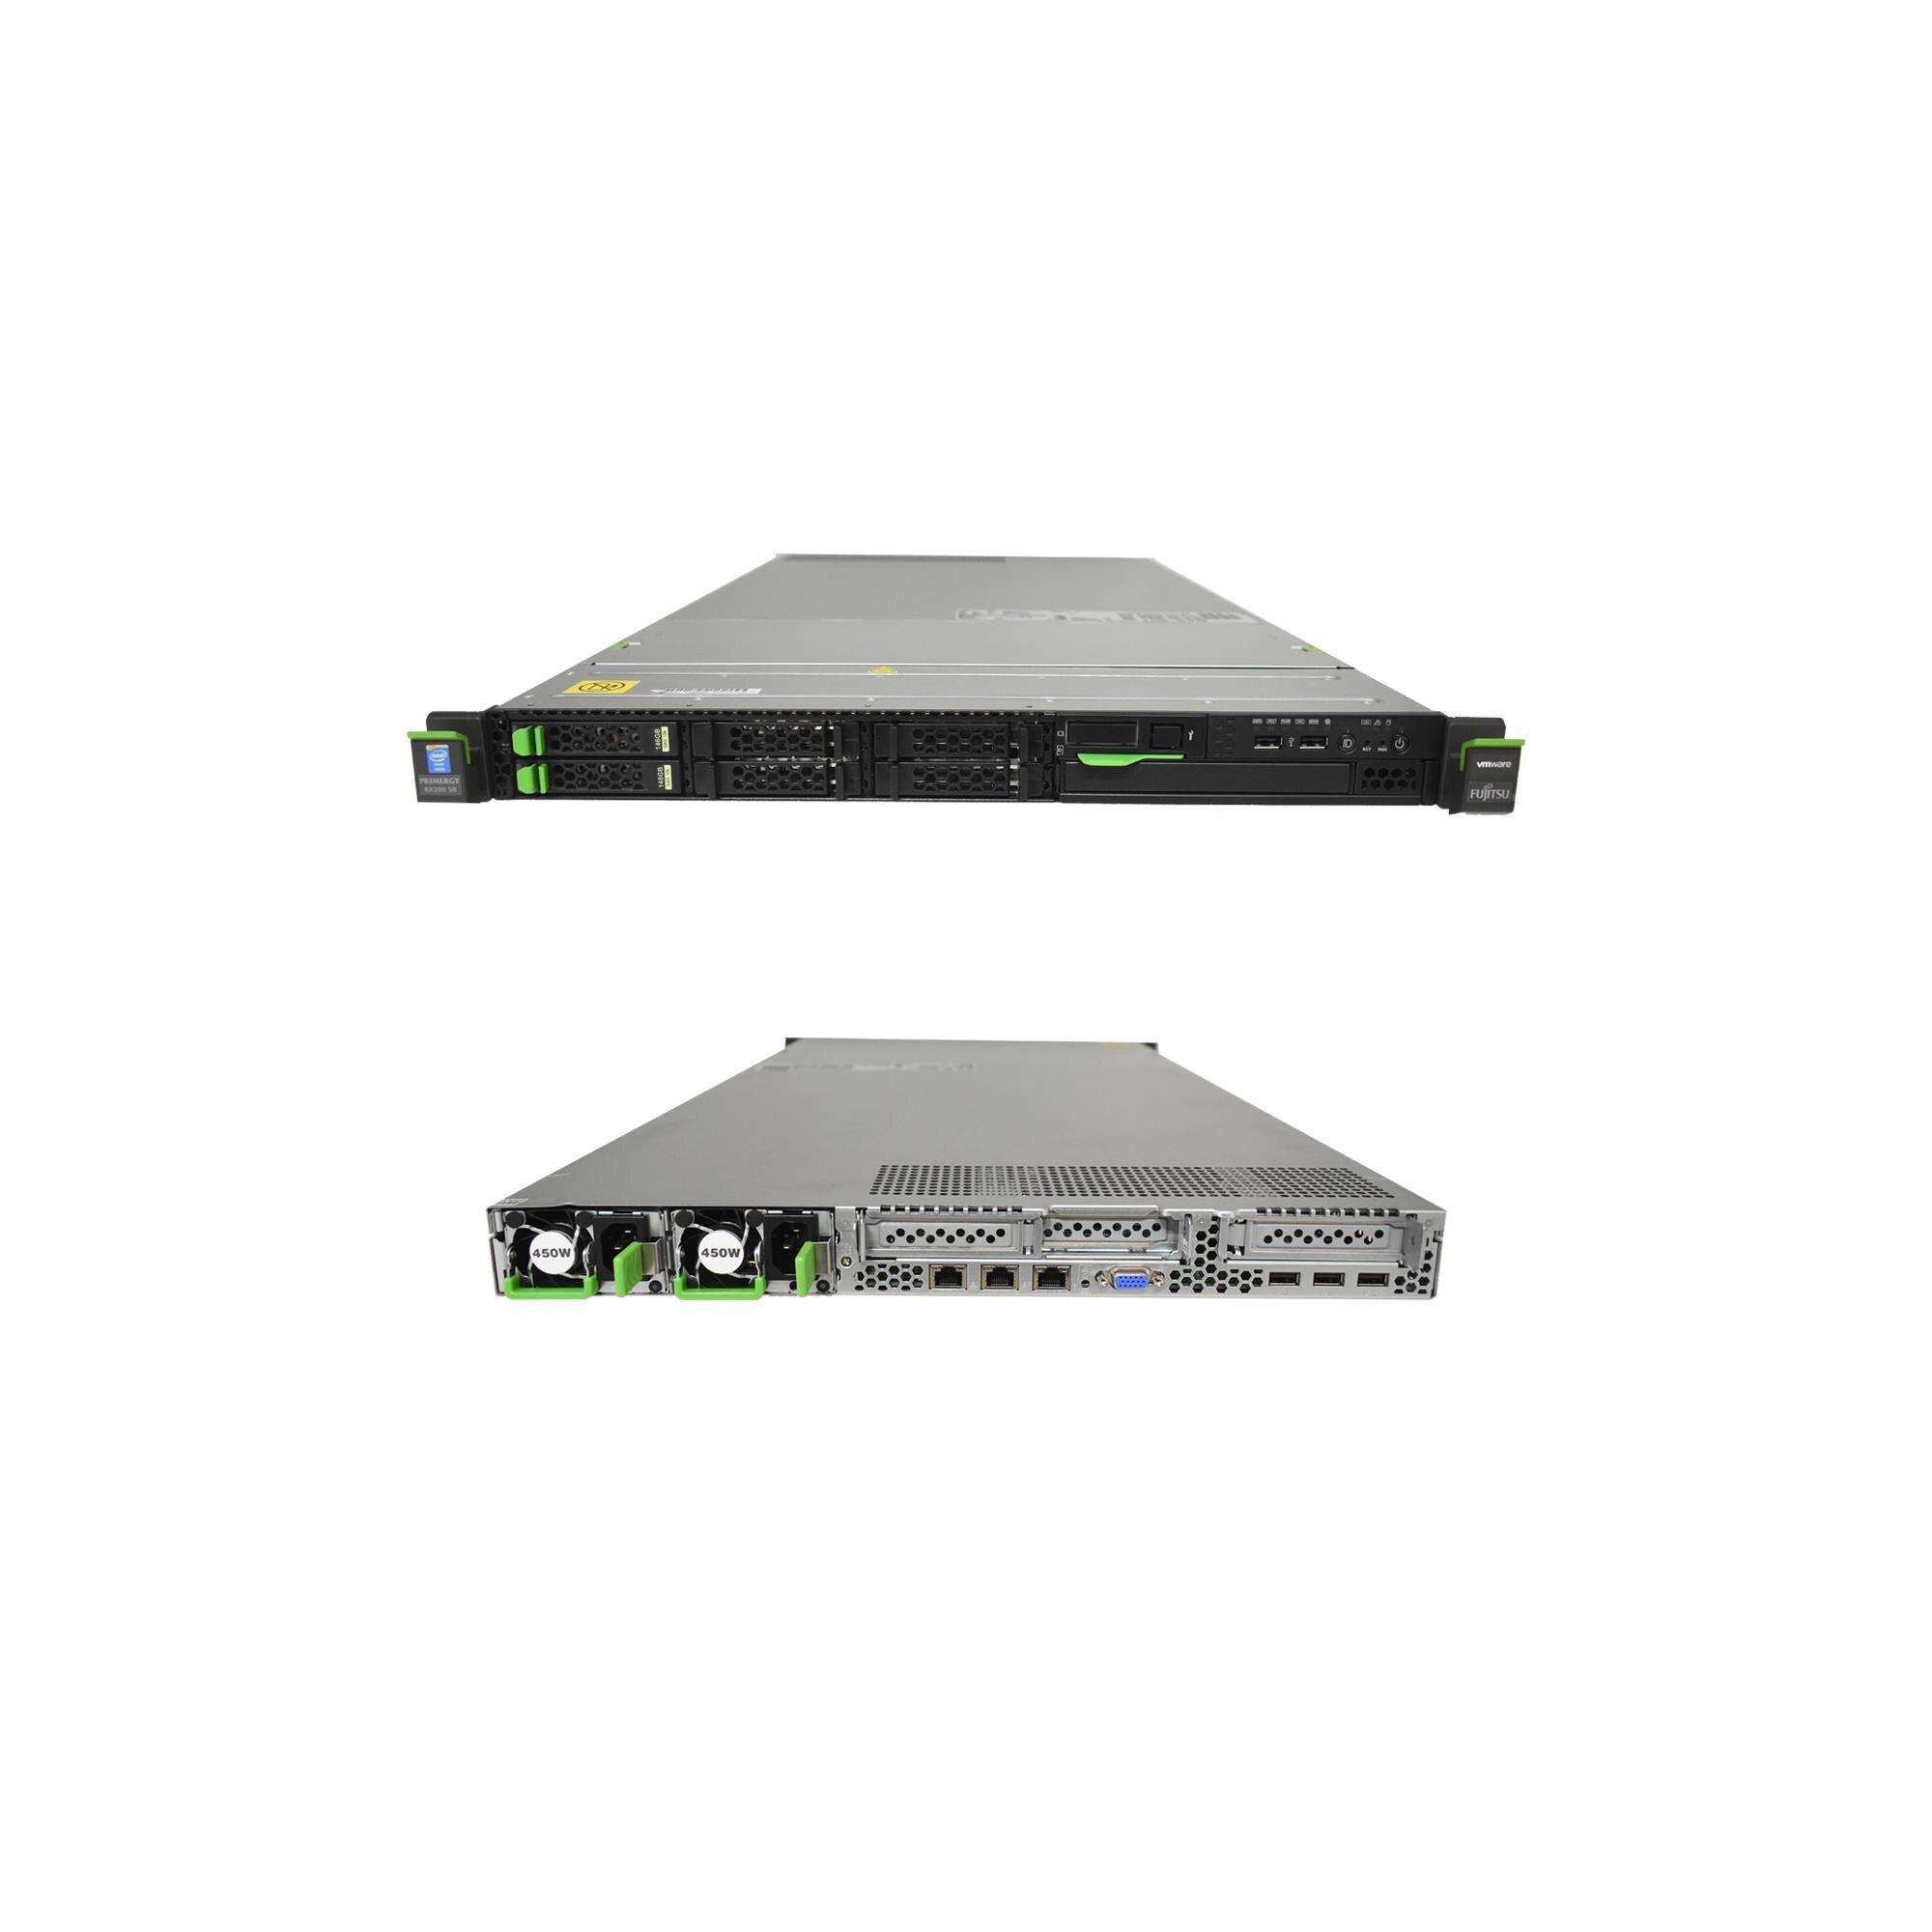 Fujitsu RX200 S8 Server 2x E5-2620 v2 6C 2.10GHz 16 GB RAM 2.5 